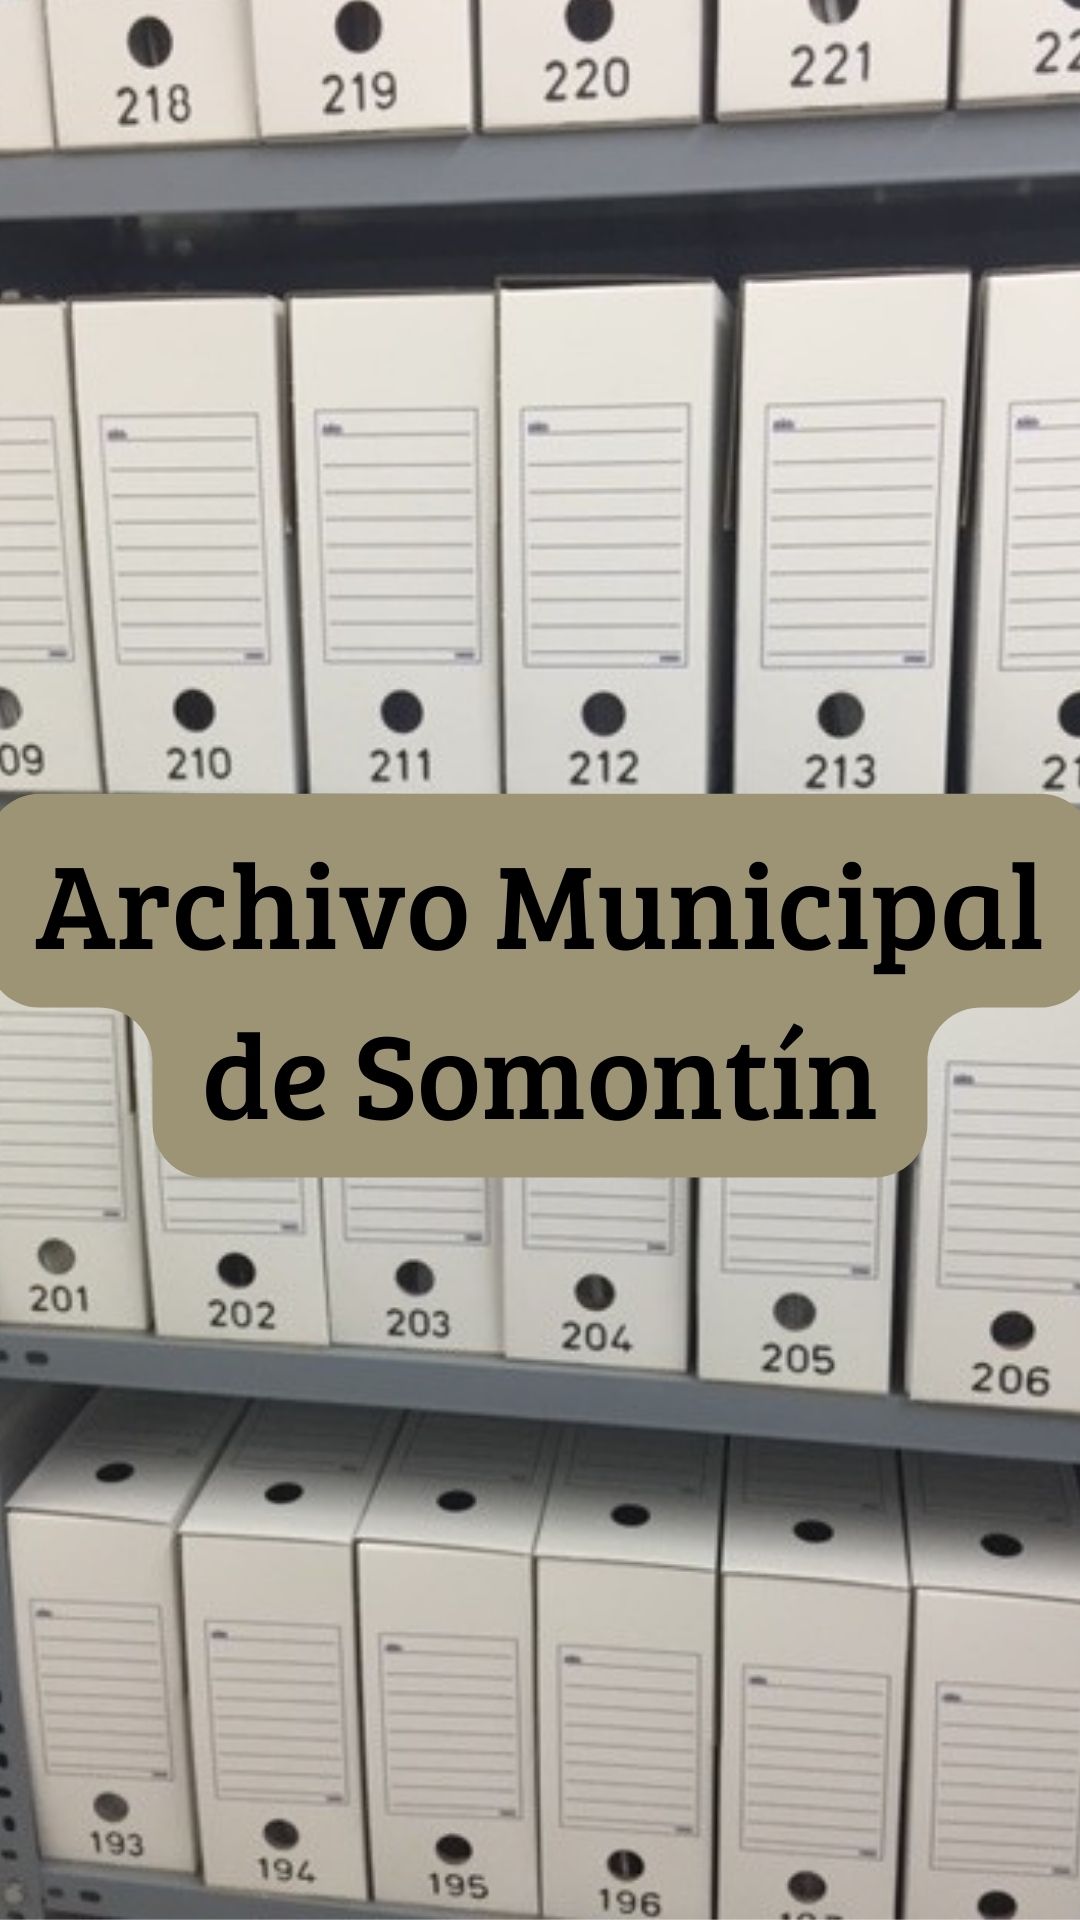 Plan de Organización de Archivos Municipales